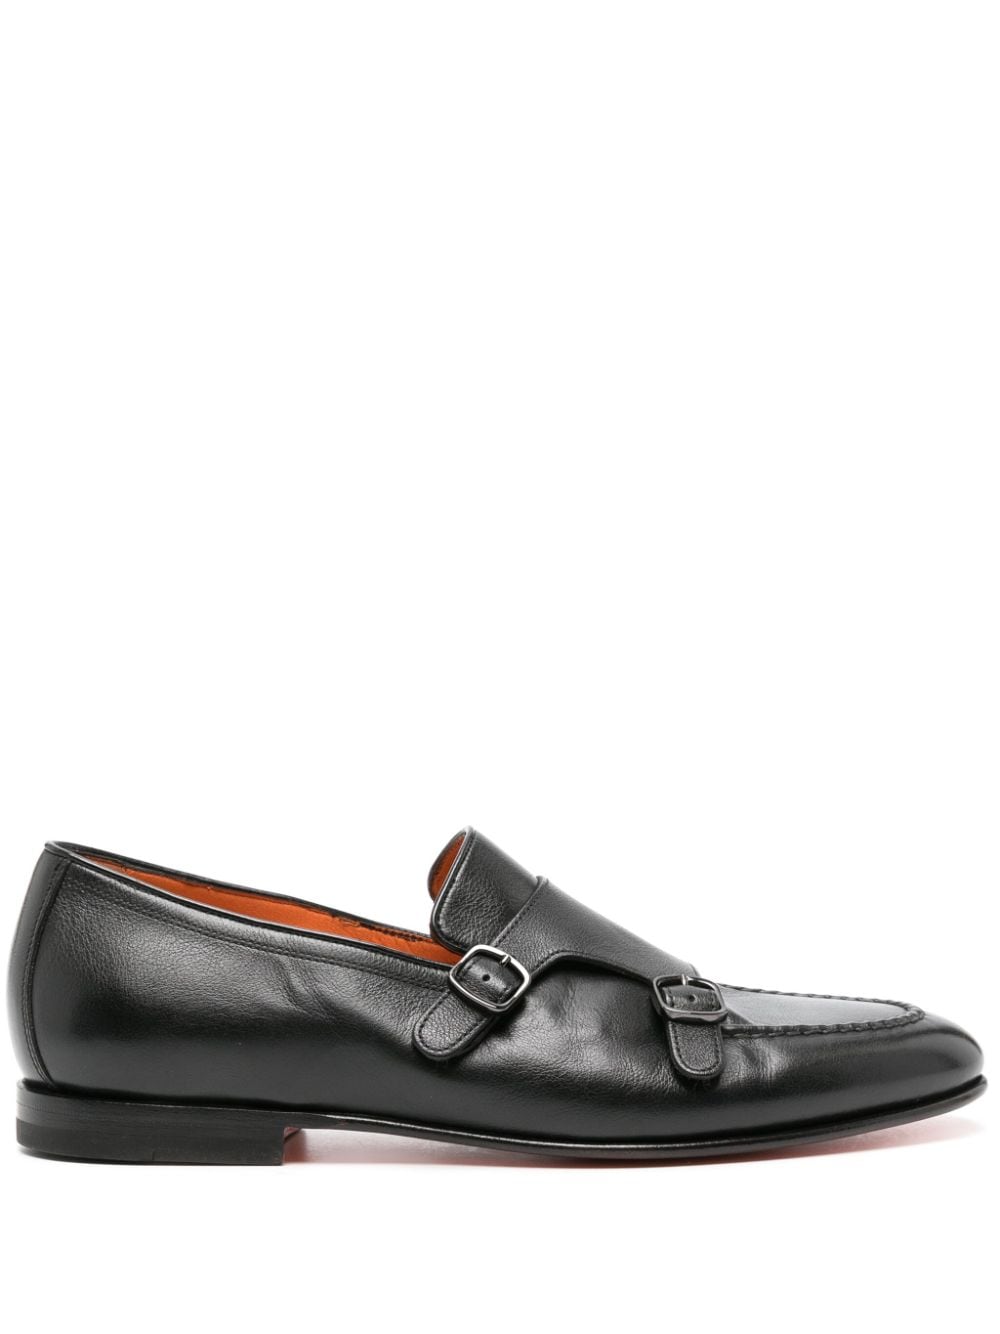 Santoni leather monk shoes - Black von Santoni